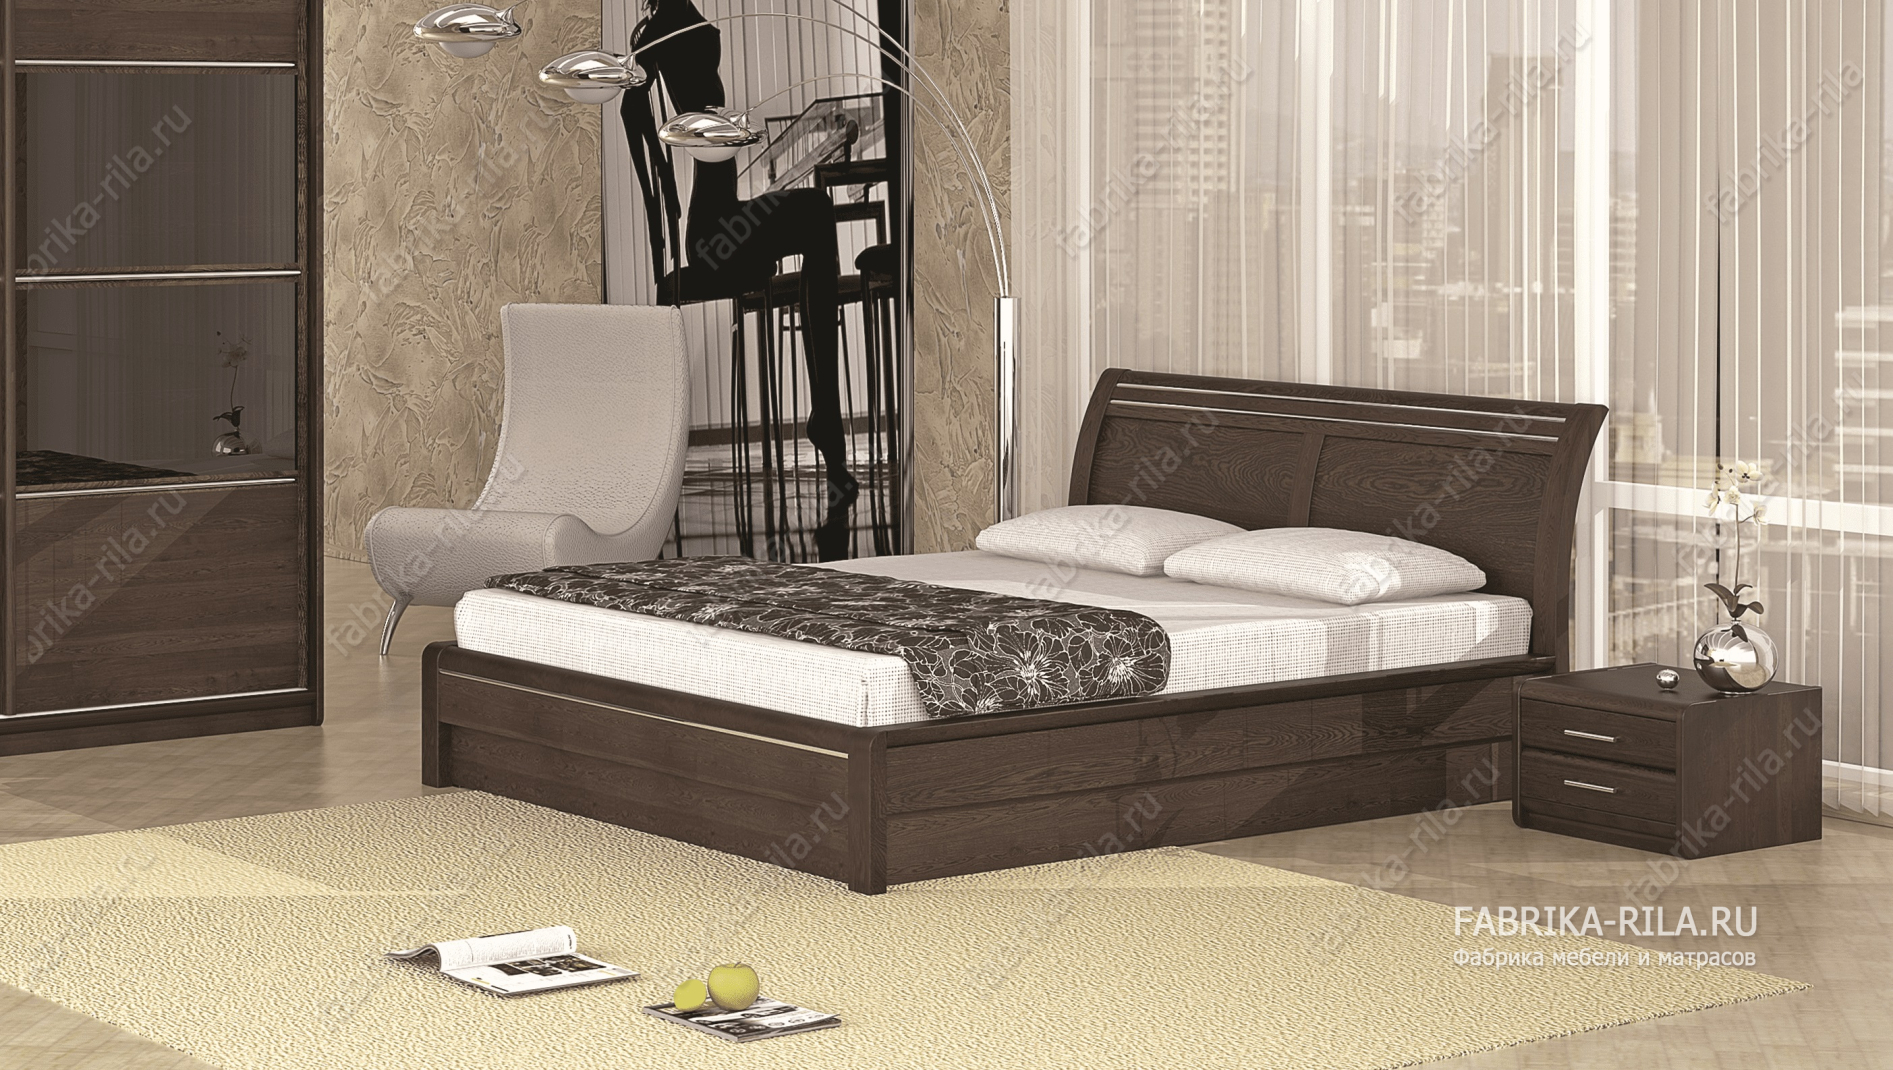 Кровать Okaeri 2 — 90x190 см. из сосны